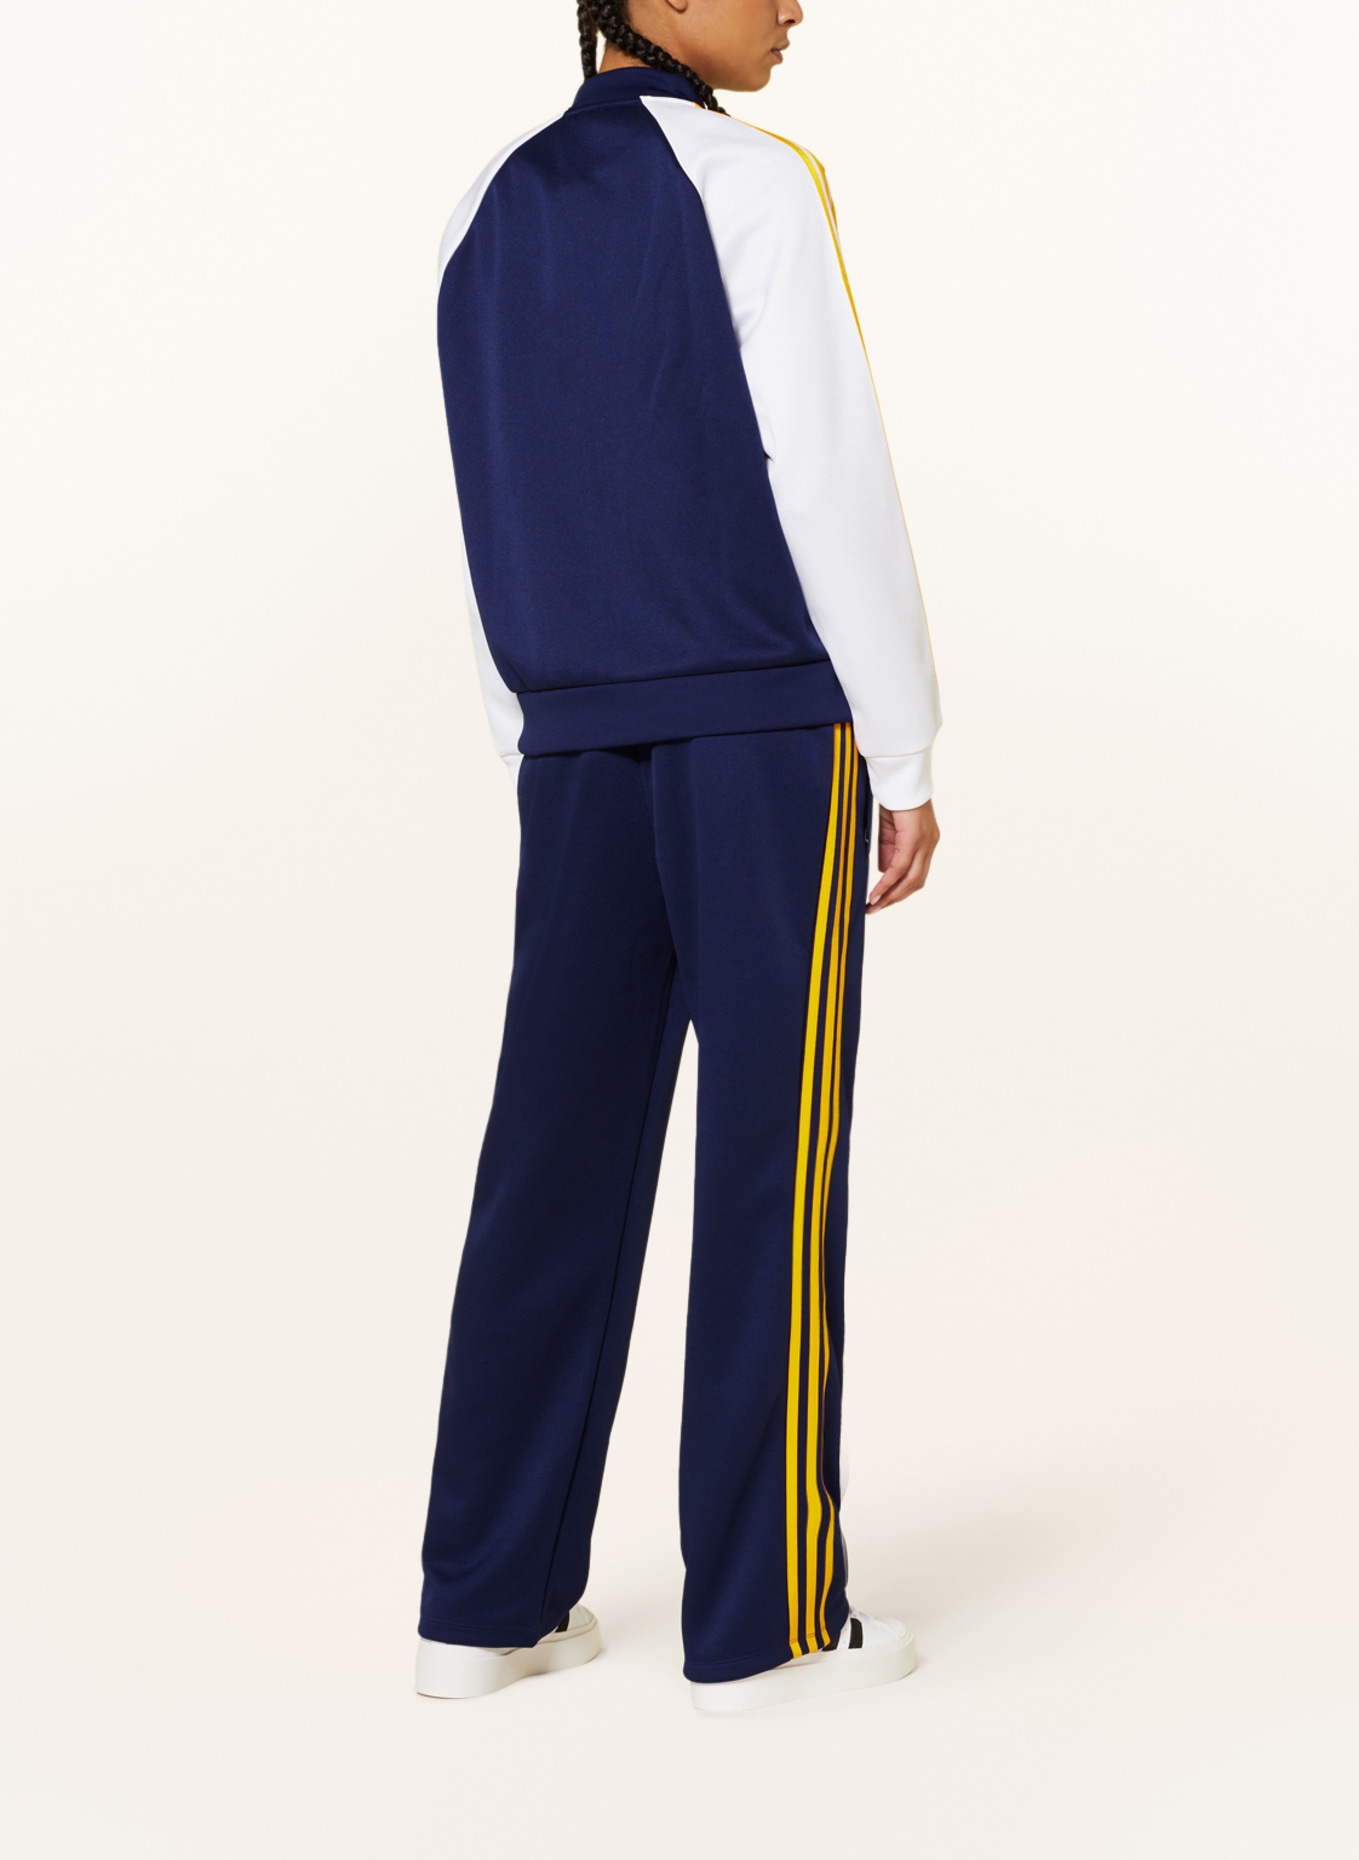 Training adidas Originals dark ADICOLOR jacket in white SST CLASSICS OVERSIZED blue/